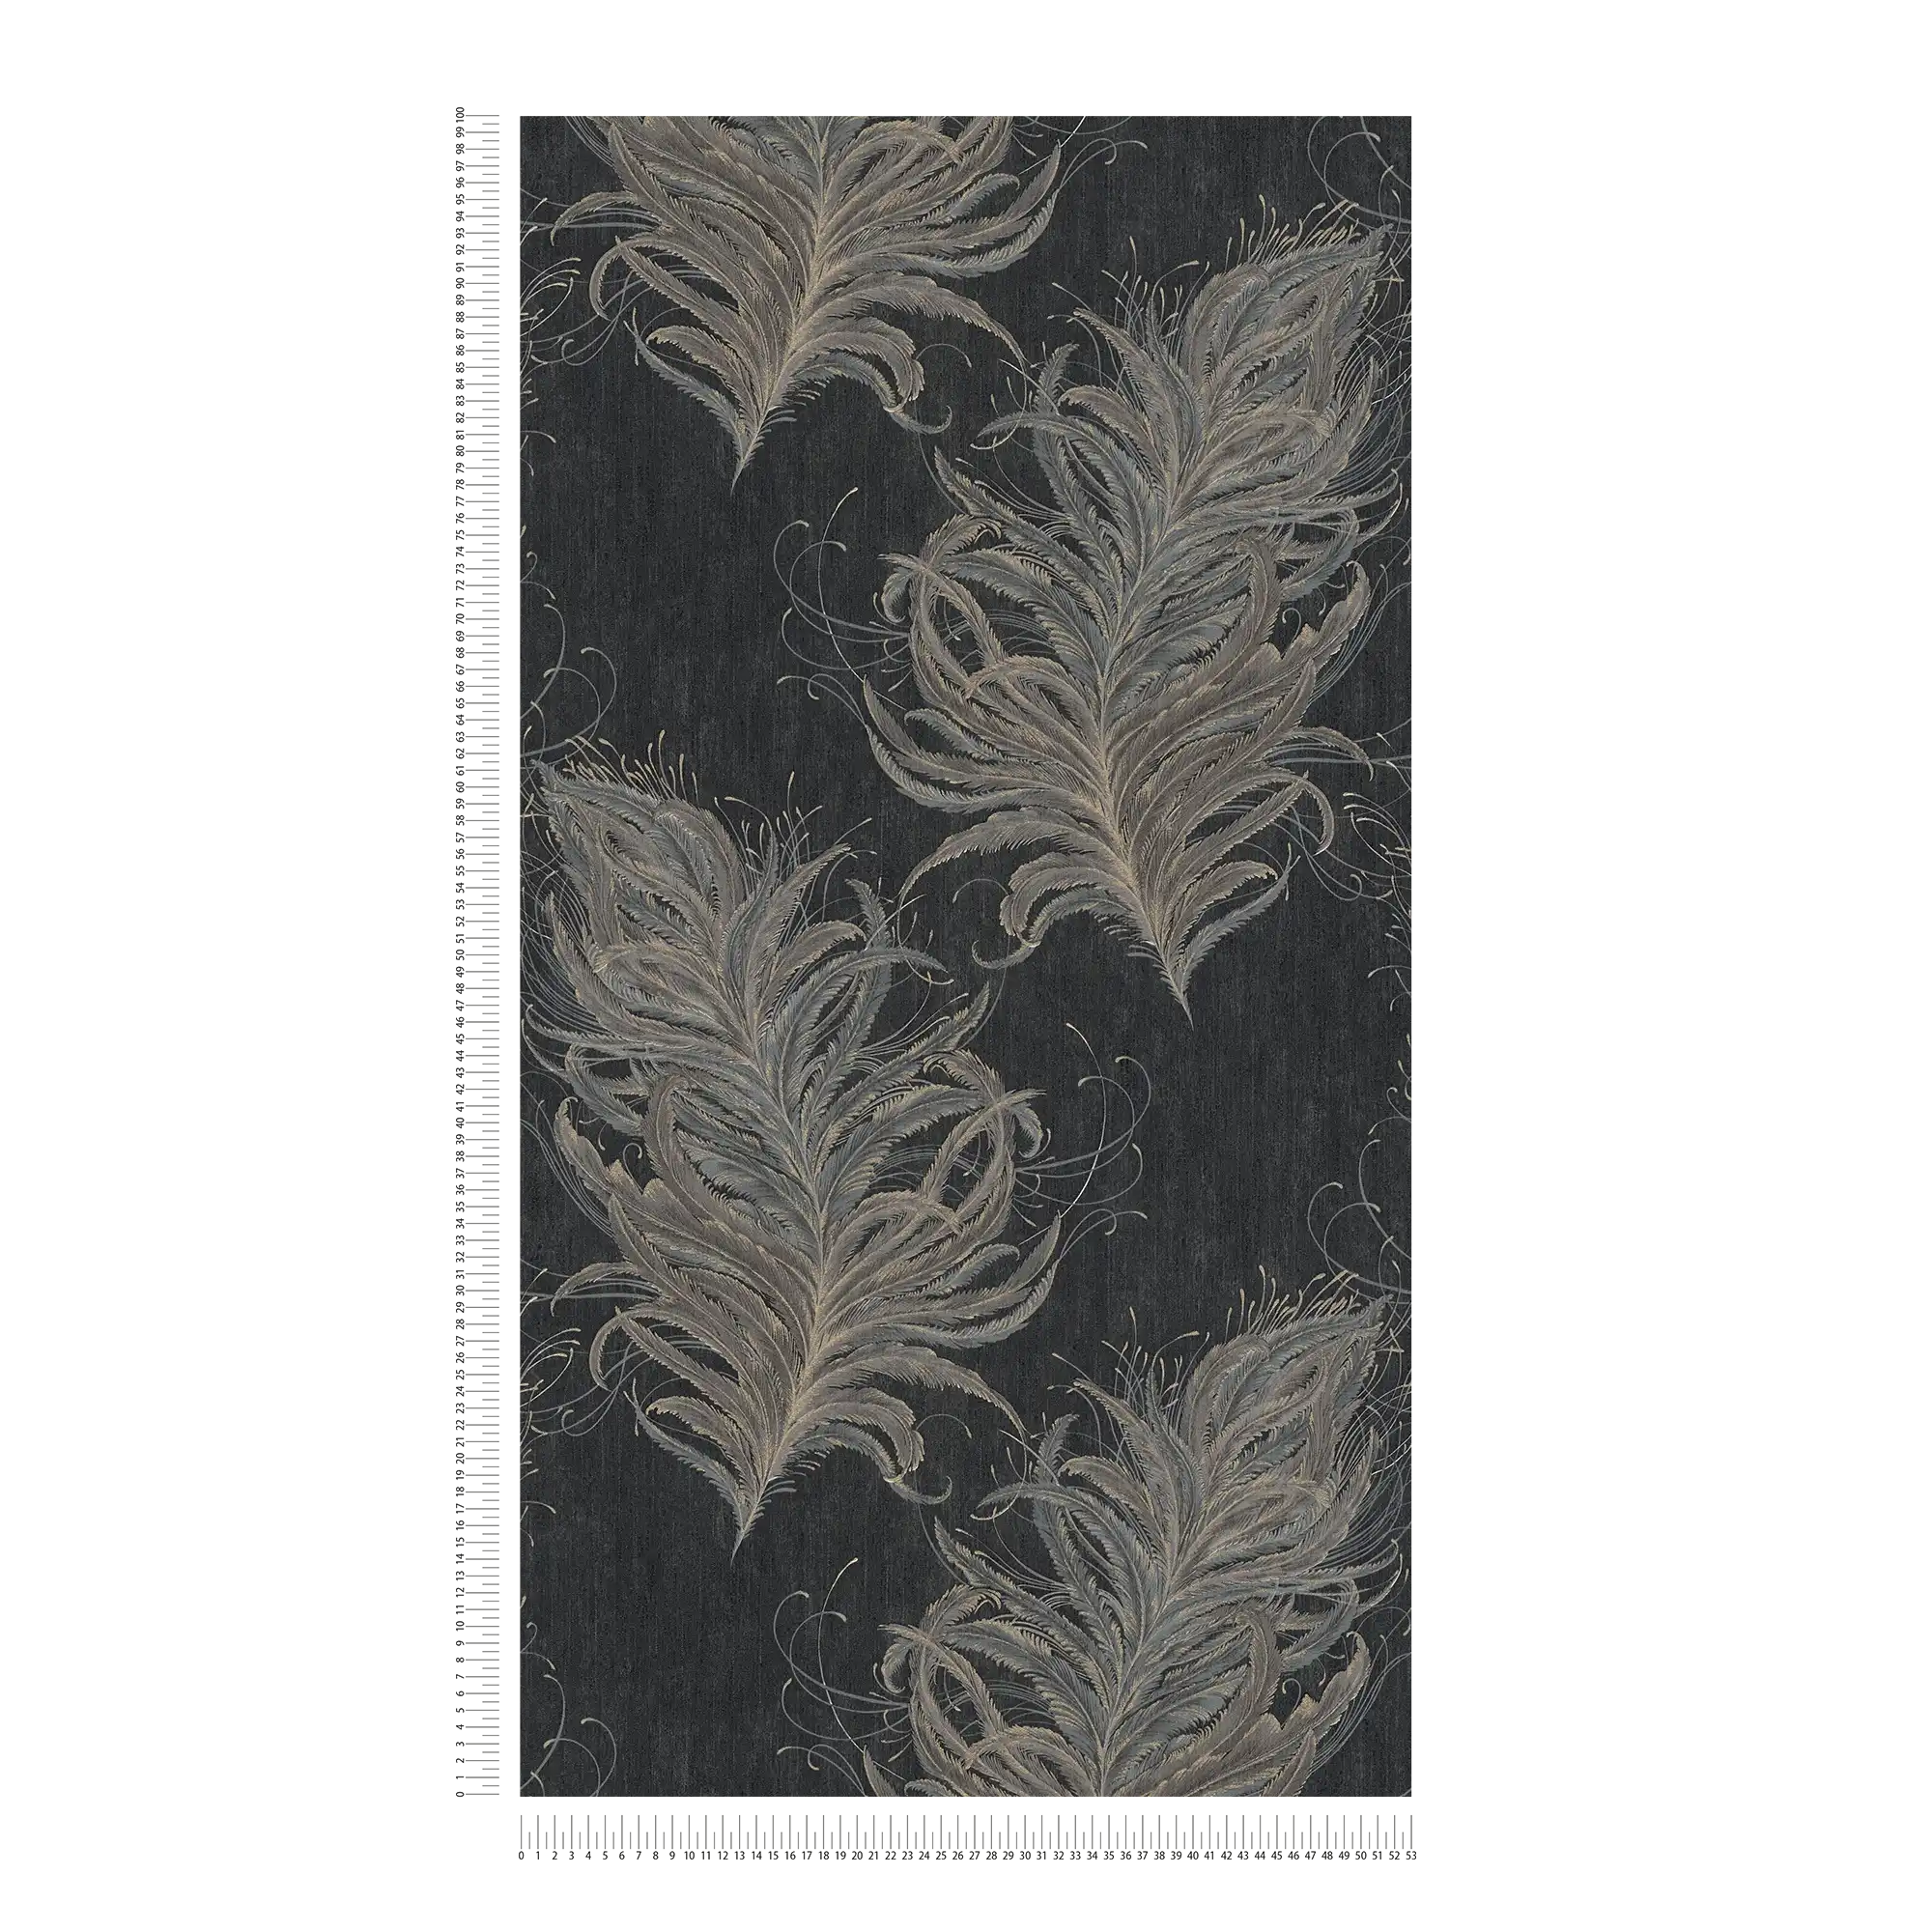             Papel pintado no tejido negro con plumas en colores metálicos
        